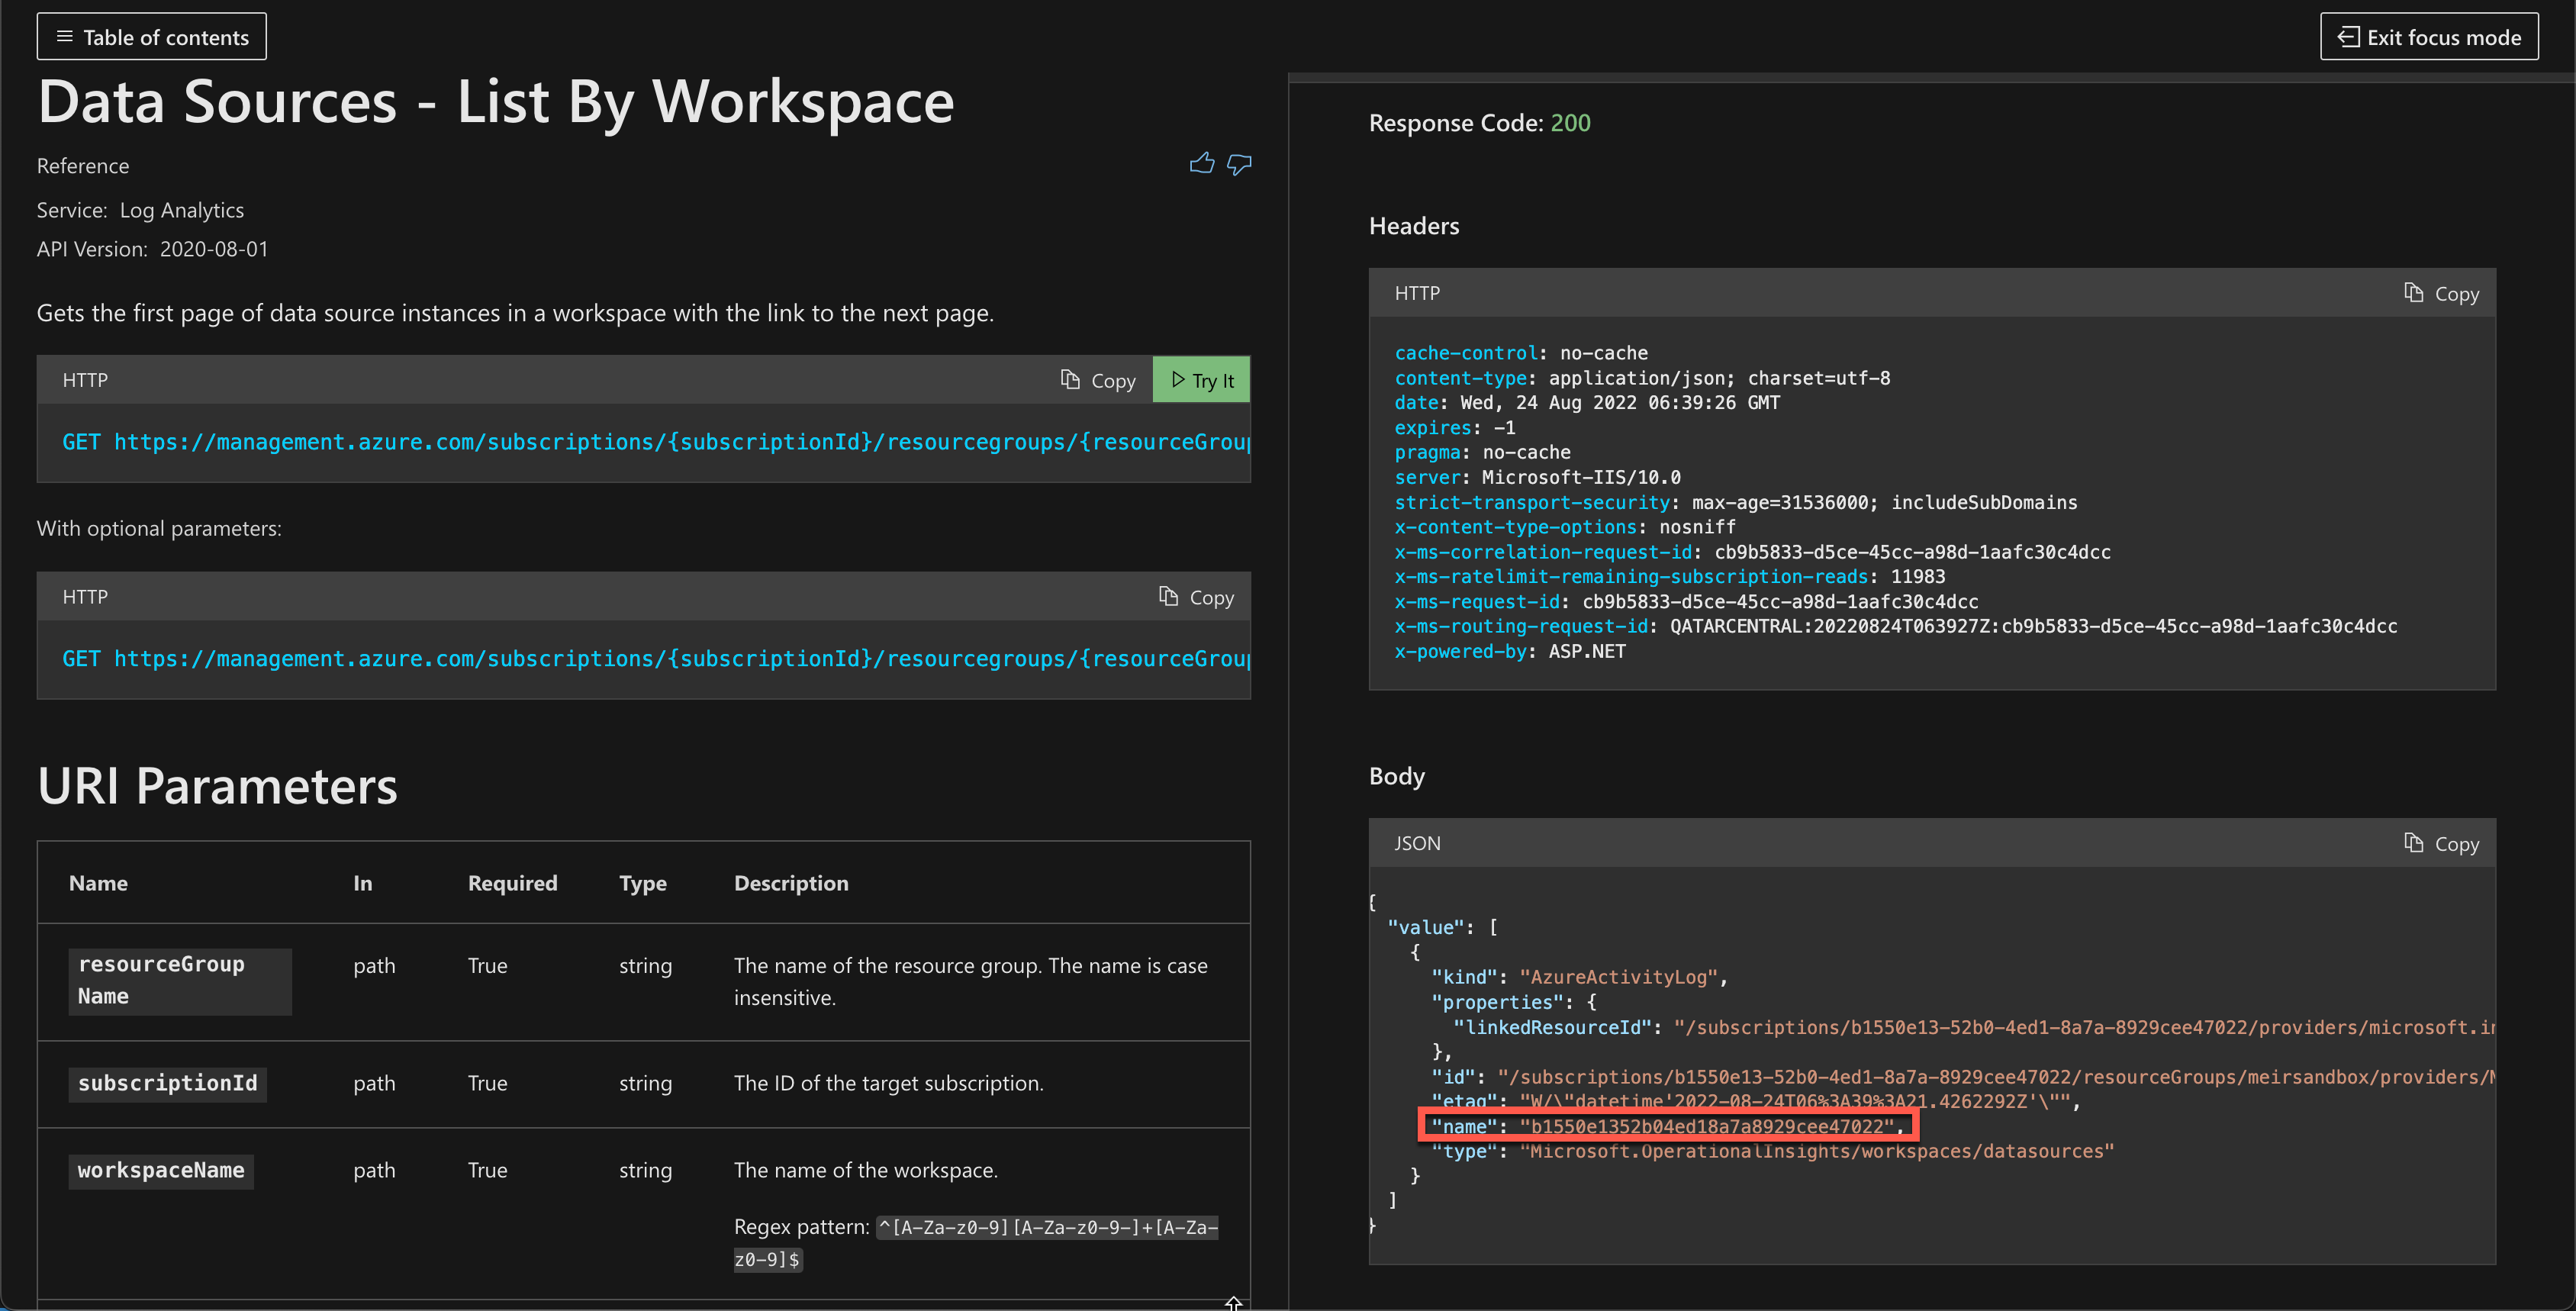 Capture d’écran montrant les informations de connexion que vous devez copier depuis la sortie de l’API Data Sources - List By Workspace.